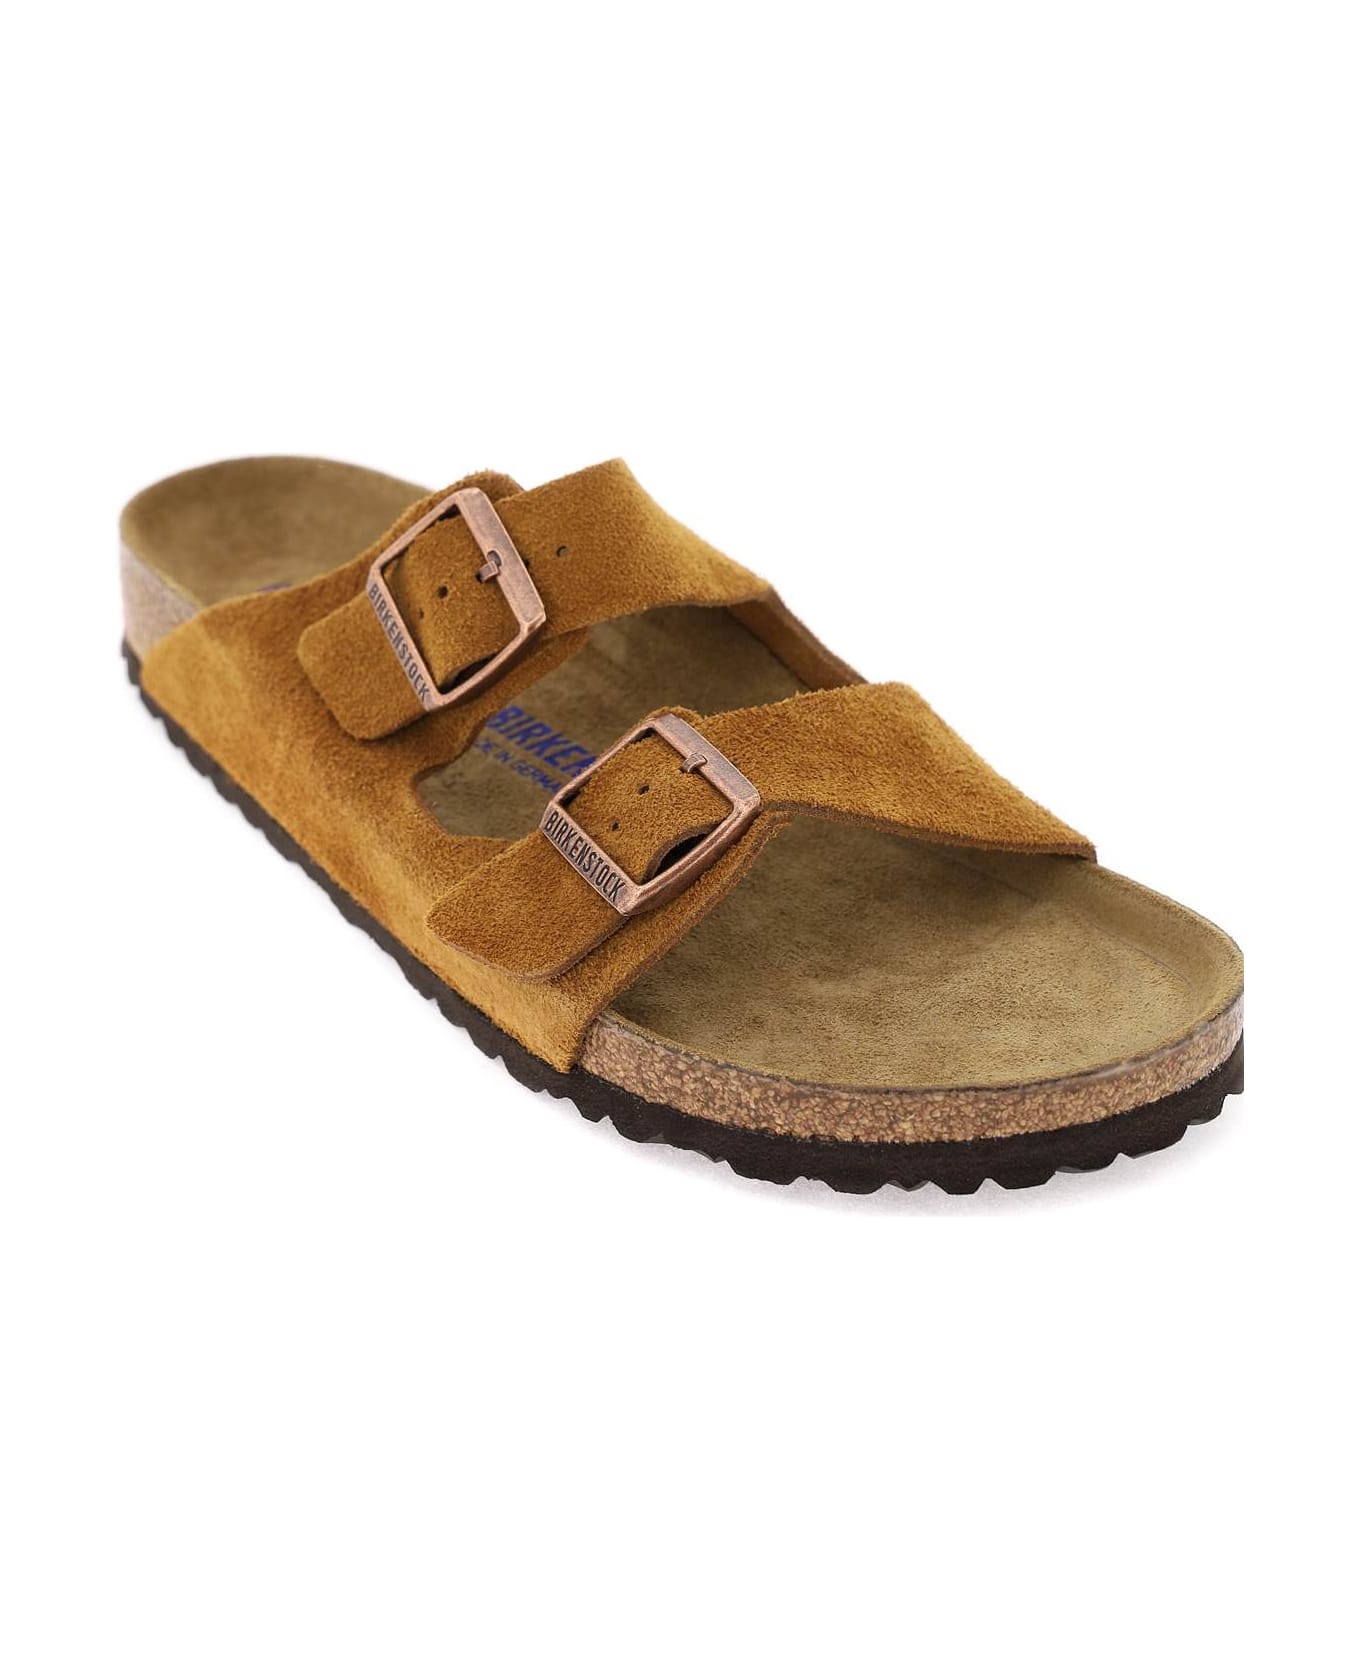 Birkenstock Arizona Suede Sandals - Mink